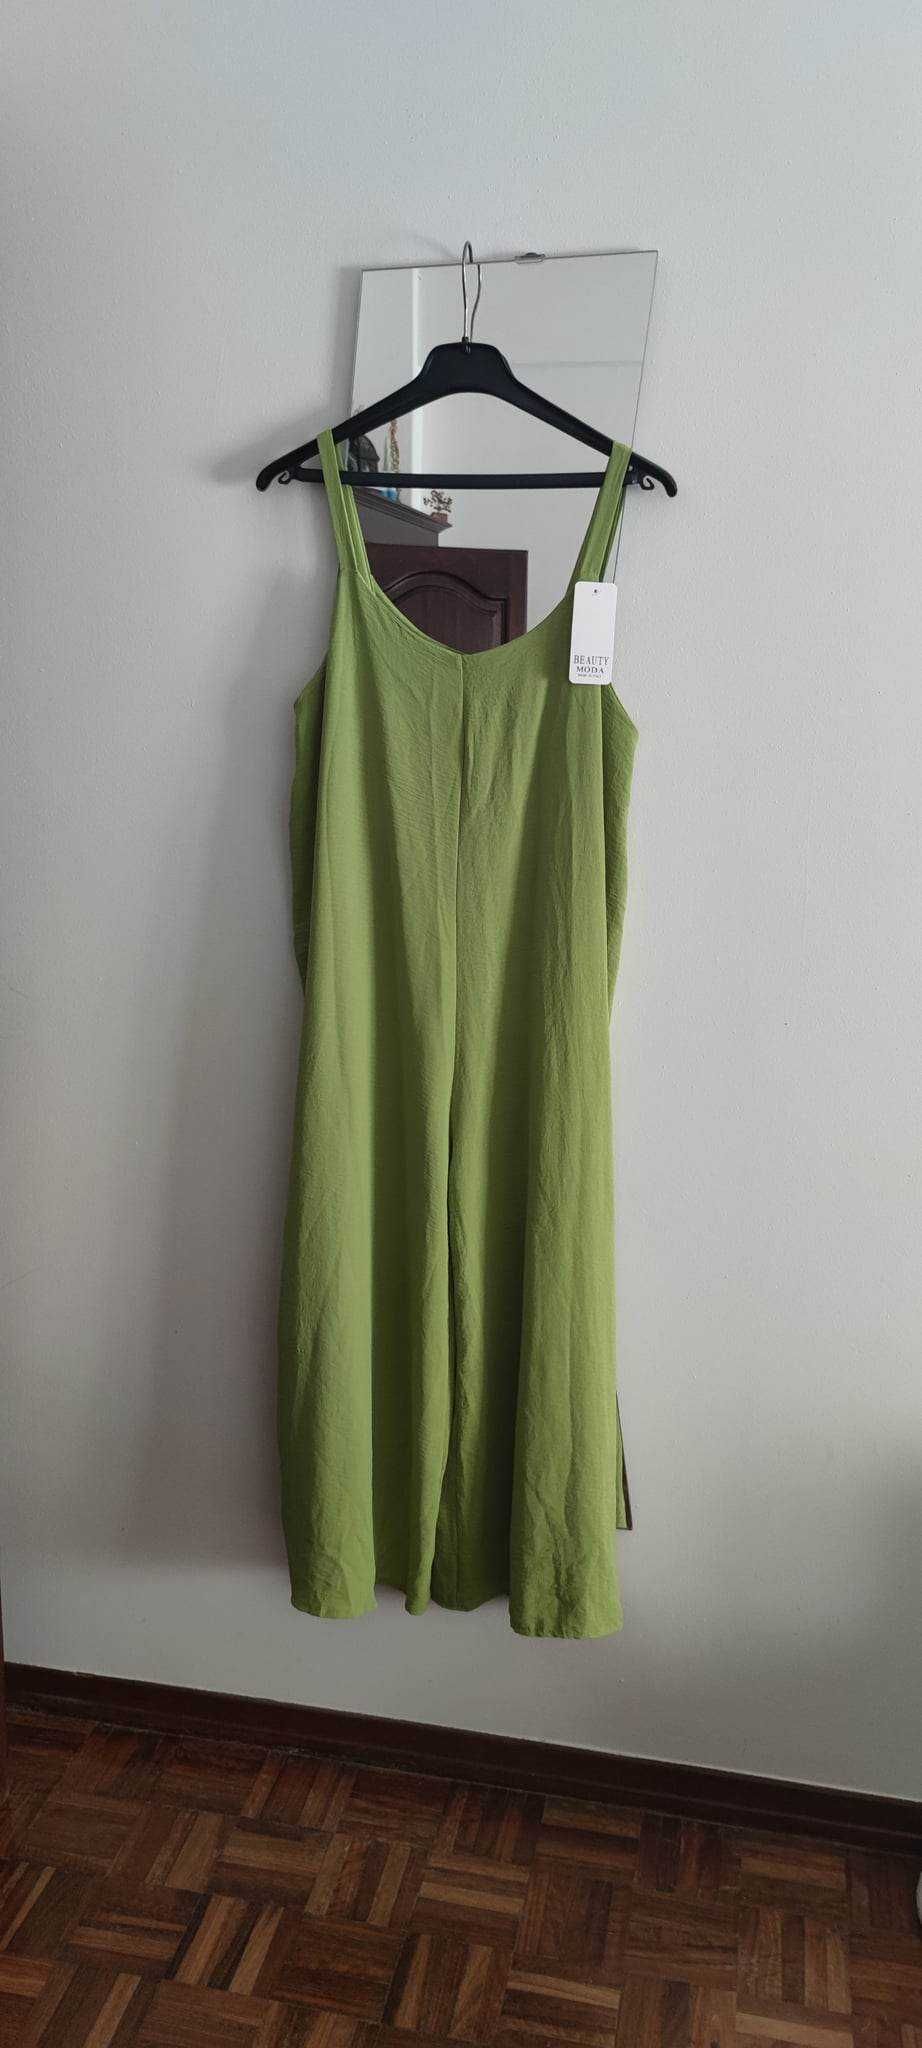 Macacão verde lima (tamanho único) veste até xxl 15€